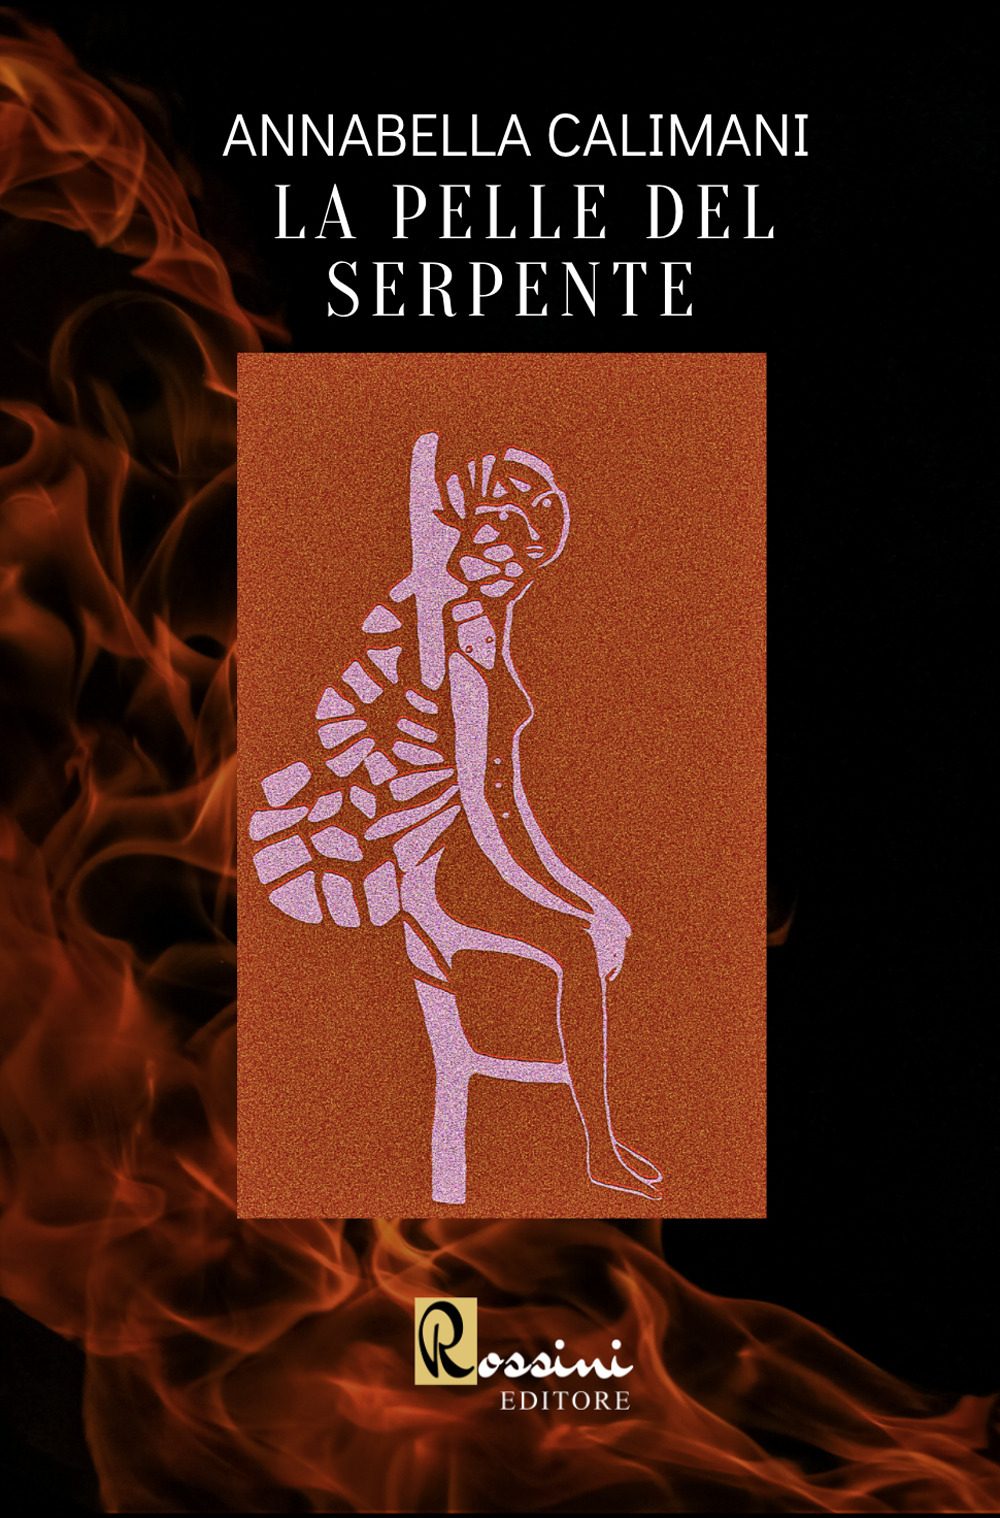 Libri Calimani Annabella - La Pelle Del Serpente NUOVO SIGILLATO, EDIZIONE DEL 12/08/2021 SUBITO DISPONIBILE